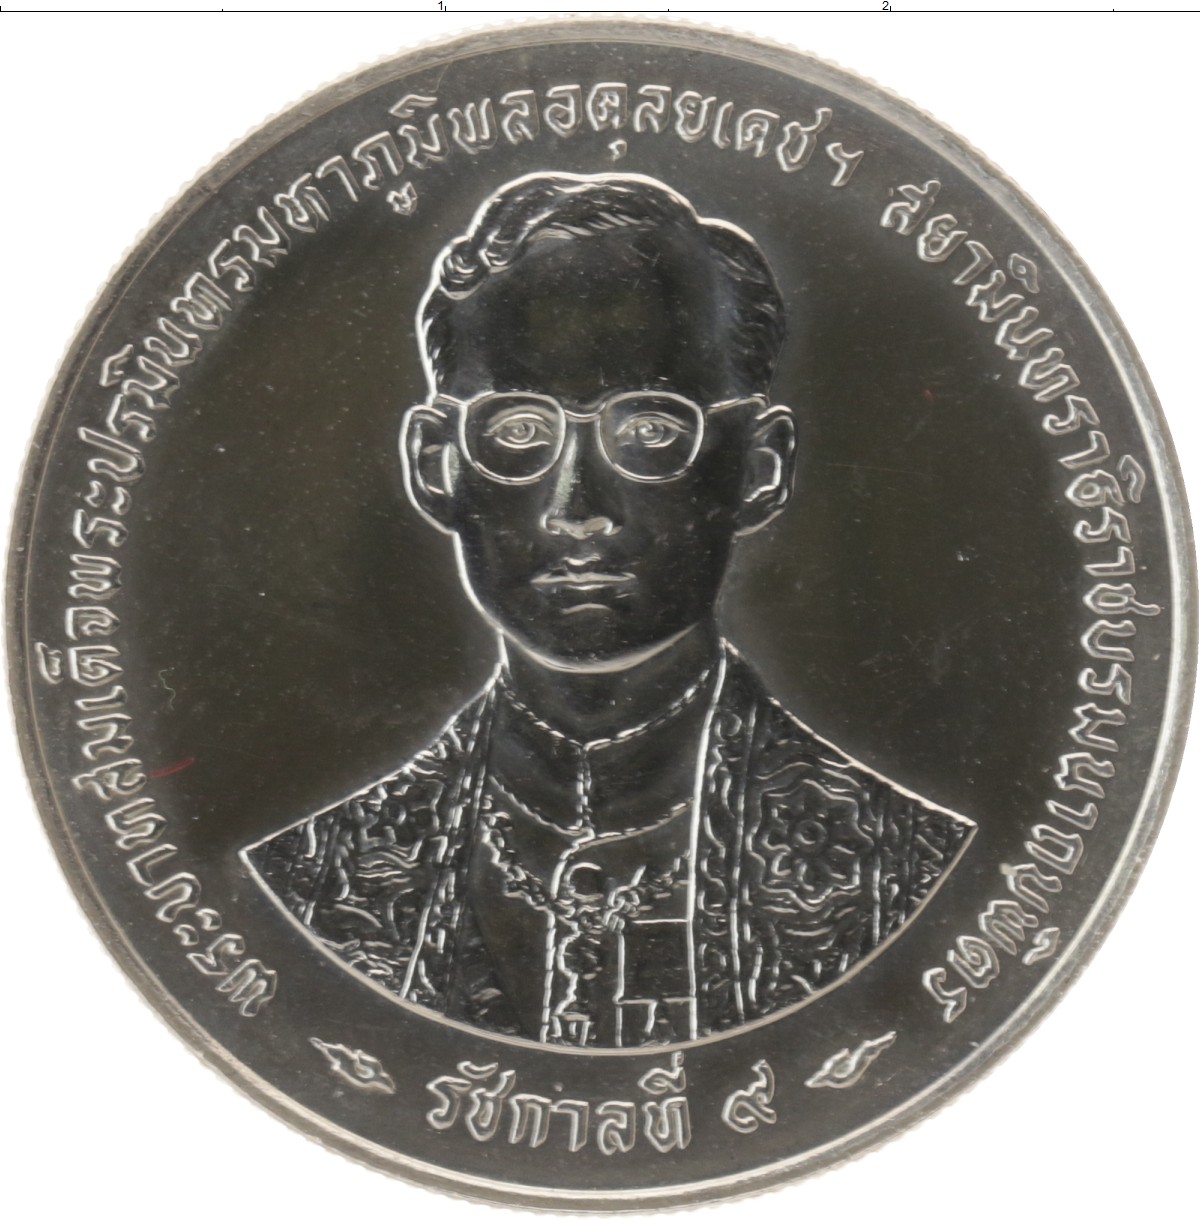 600 бат. Серебряные монеты Тайланда 50 бат 1971г. 600 Бат Таиланд монета серебро. Серебряные монеты Тайланда 50 бат. Монета Таиланд 50 бат.